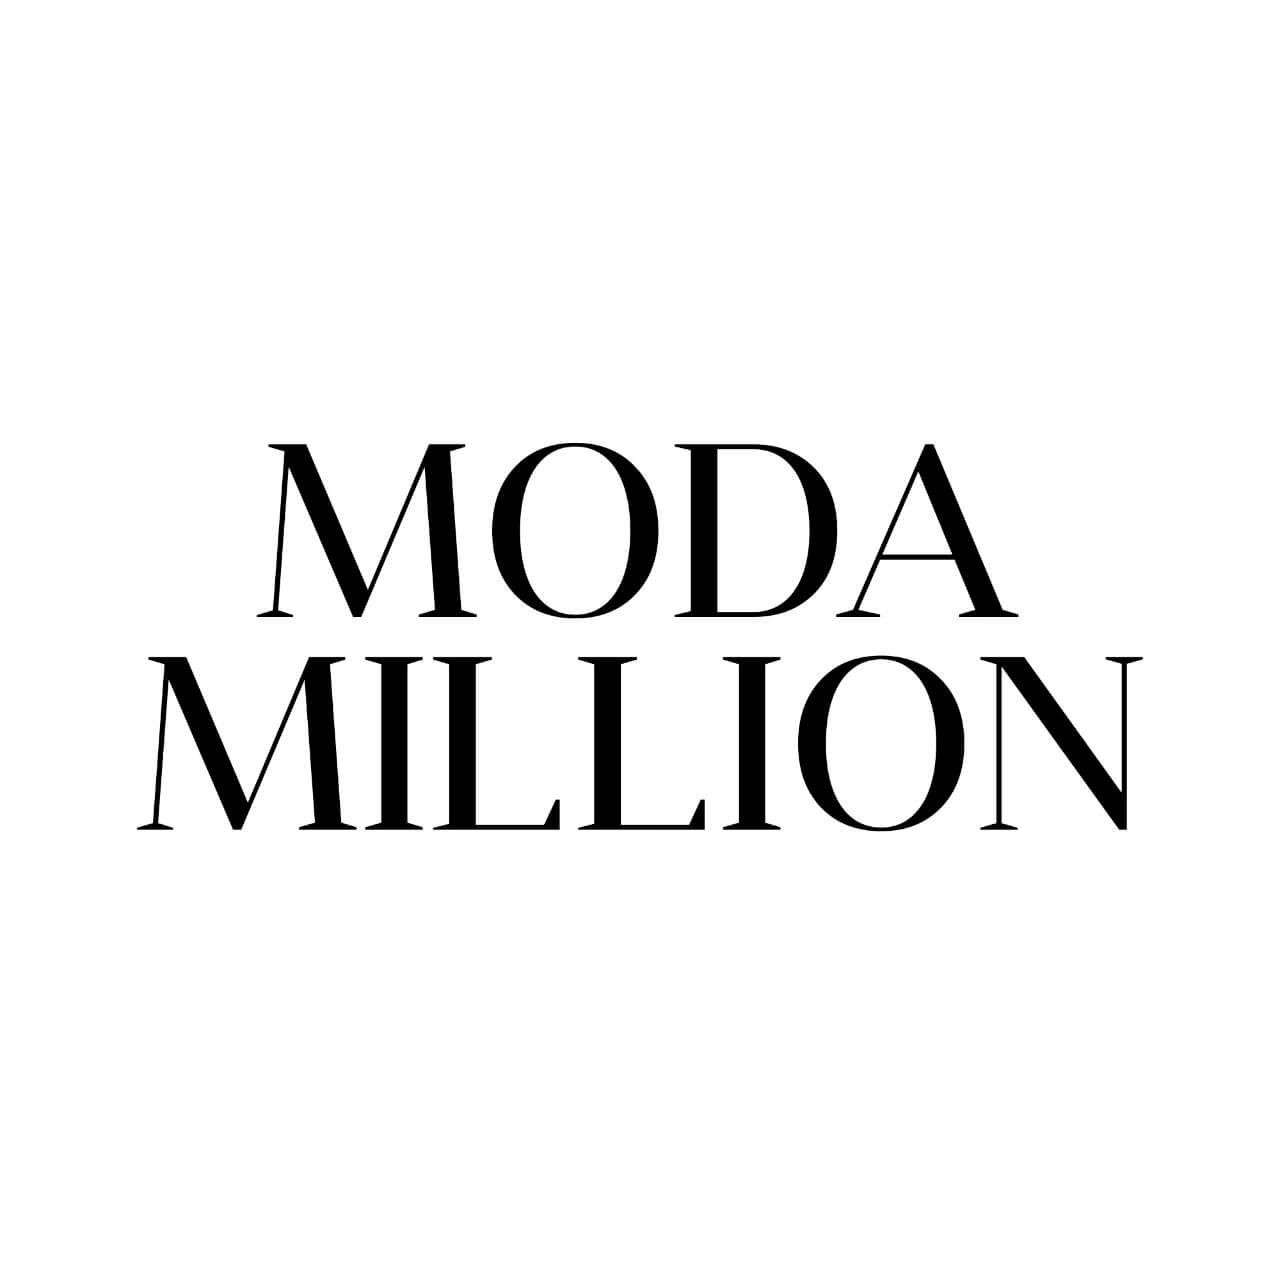 MODA MILLION